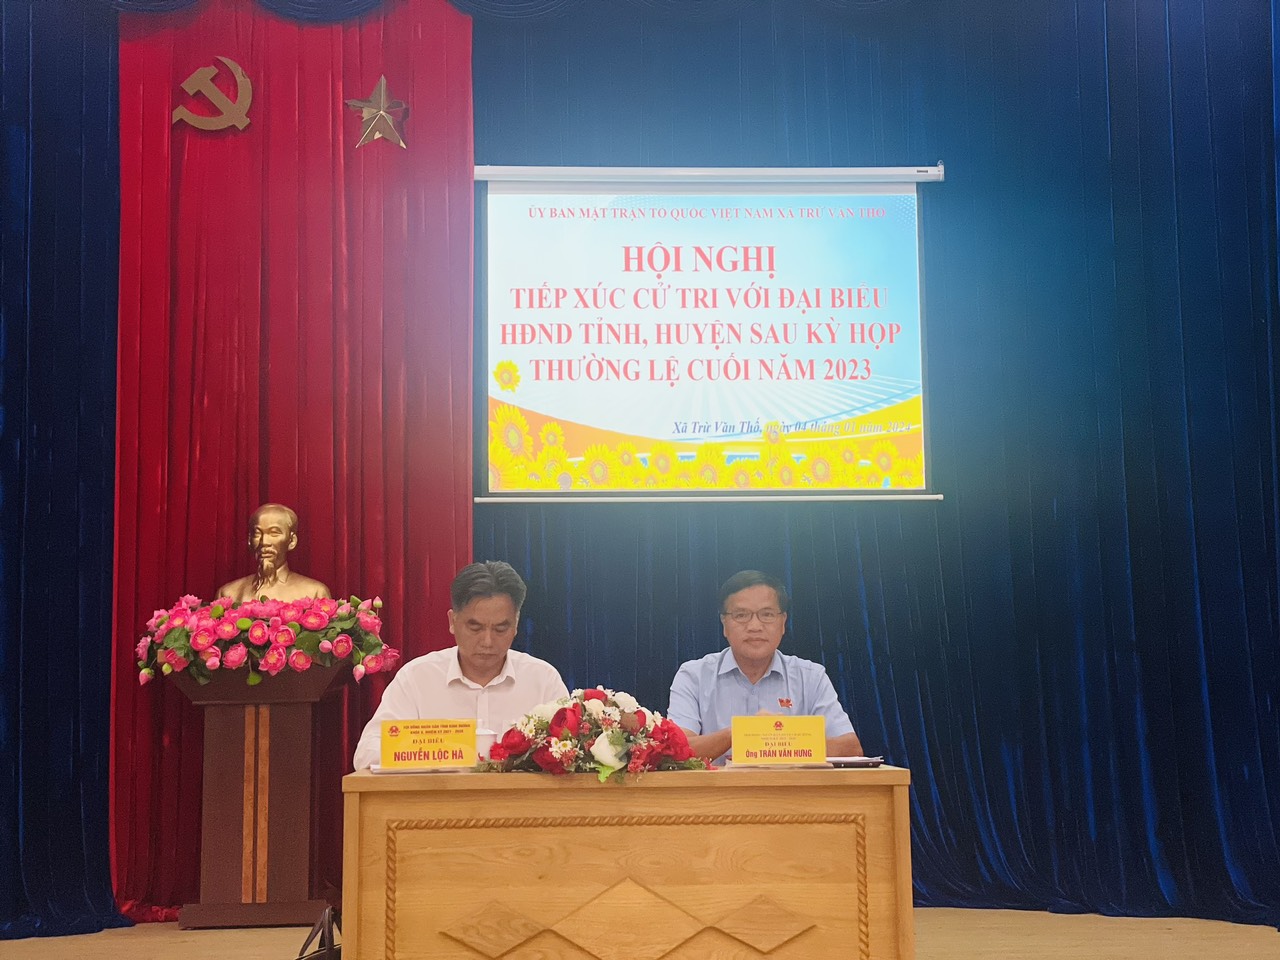 Xã Trừ Văn Thố tổ chức tiếp xúc cử tri với Đại biểu HĐND tỉnh, huyện sau kỳ họp thường lệ cuối năm 2023